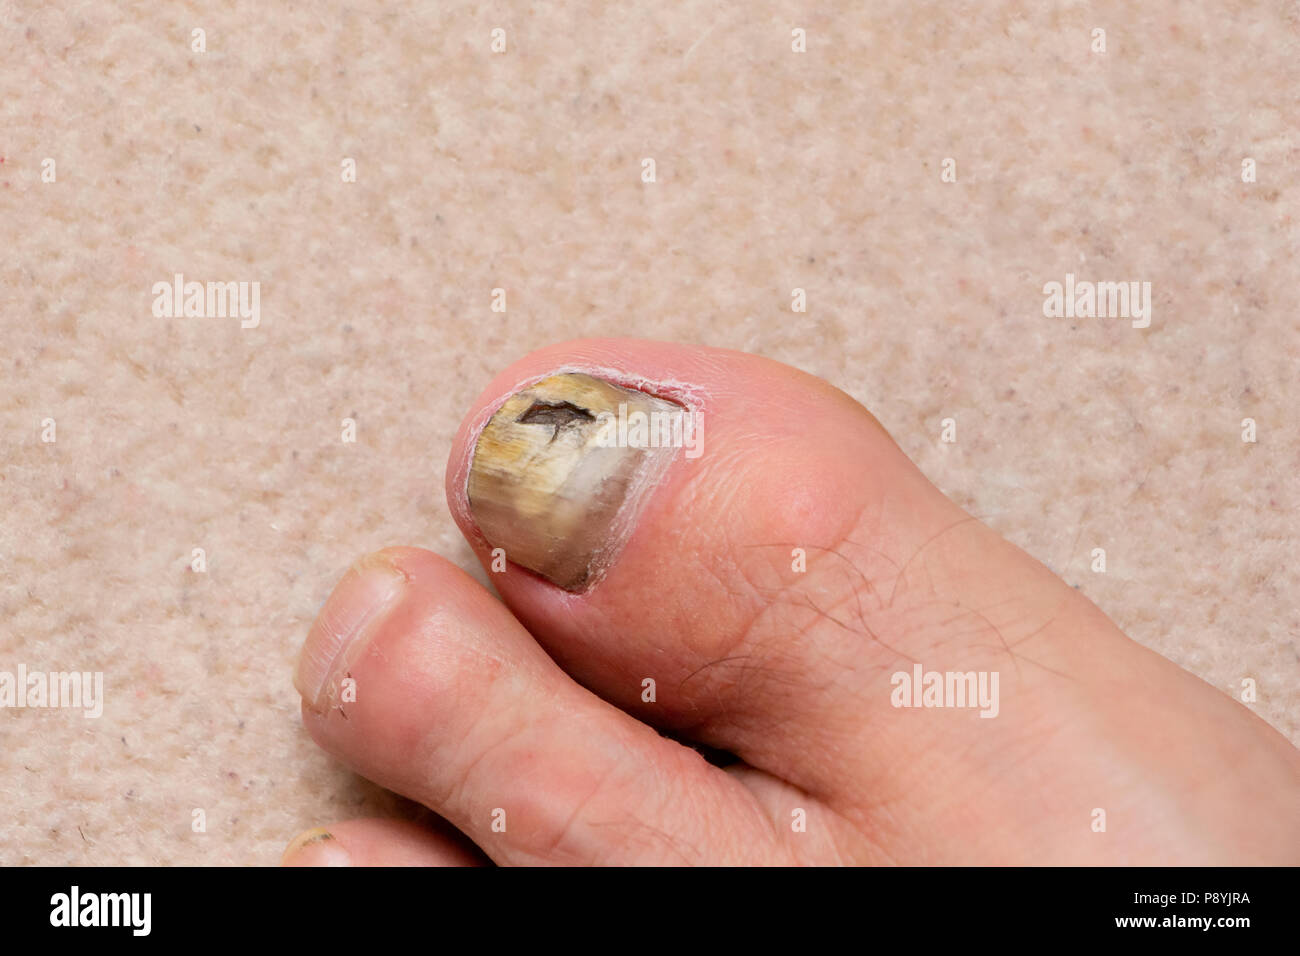 Close-up of ill male foot thumb nail, fungal nail. Stock Photo